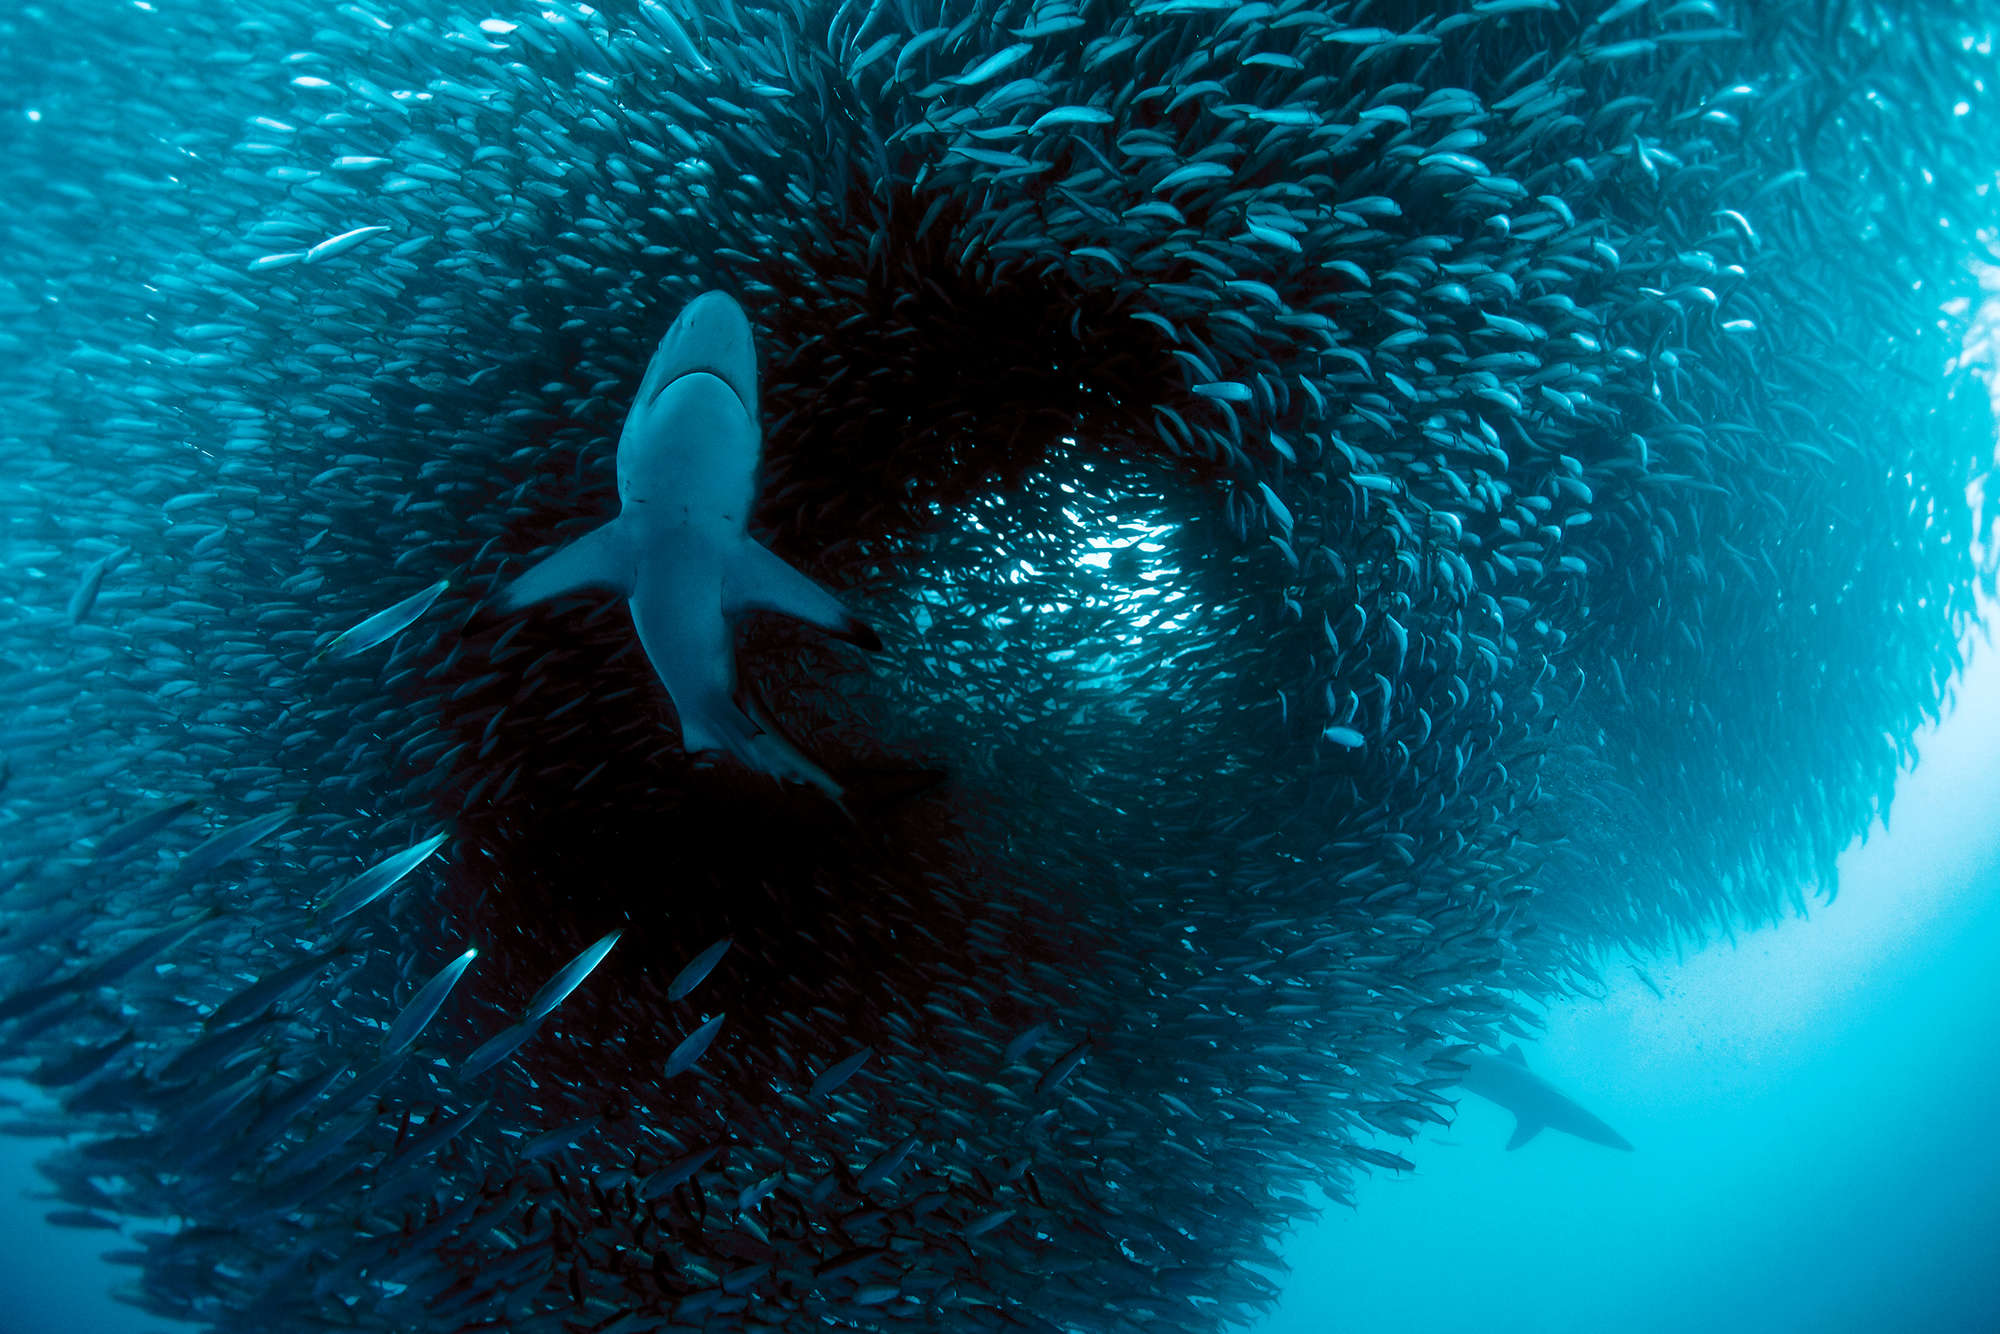             Fotomurali marino con caccia allo squalo su tessuto non tessuto liscio madreperlato
        